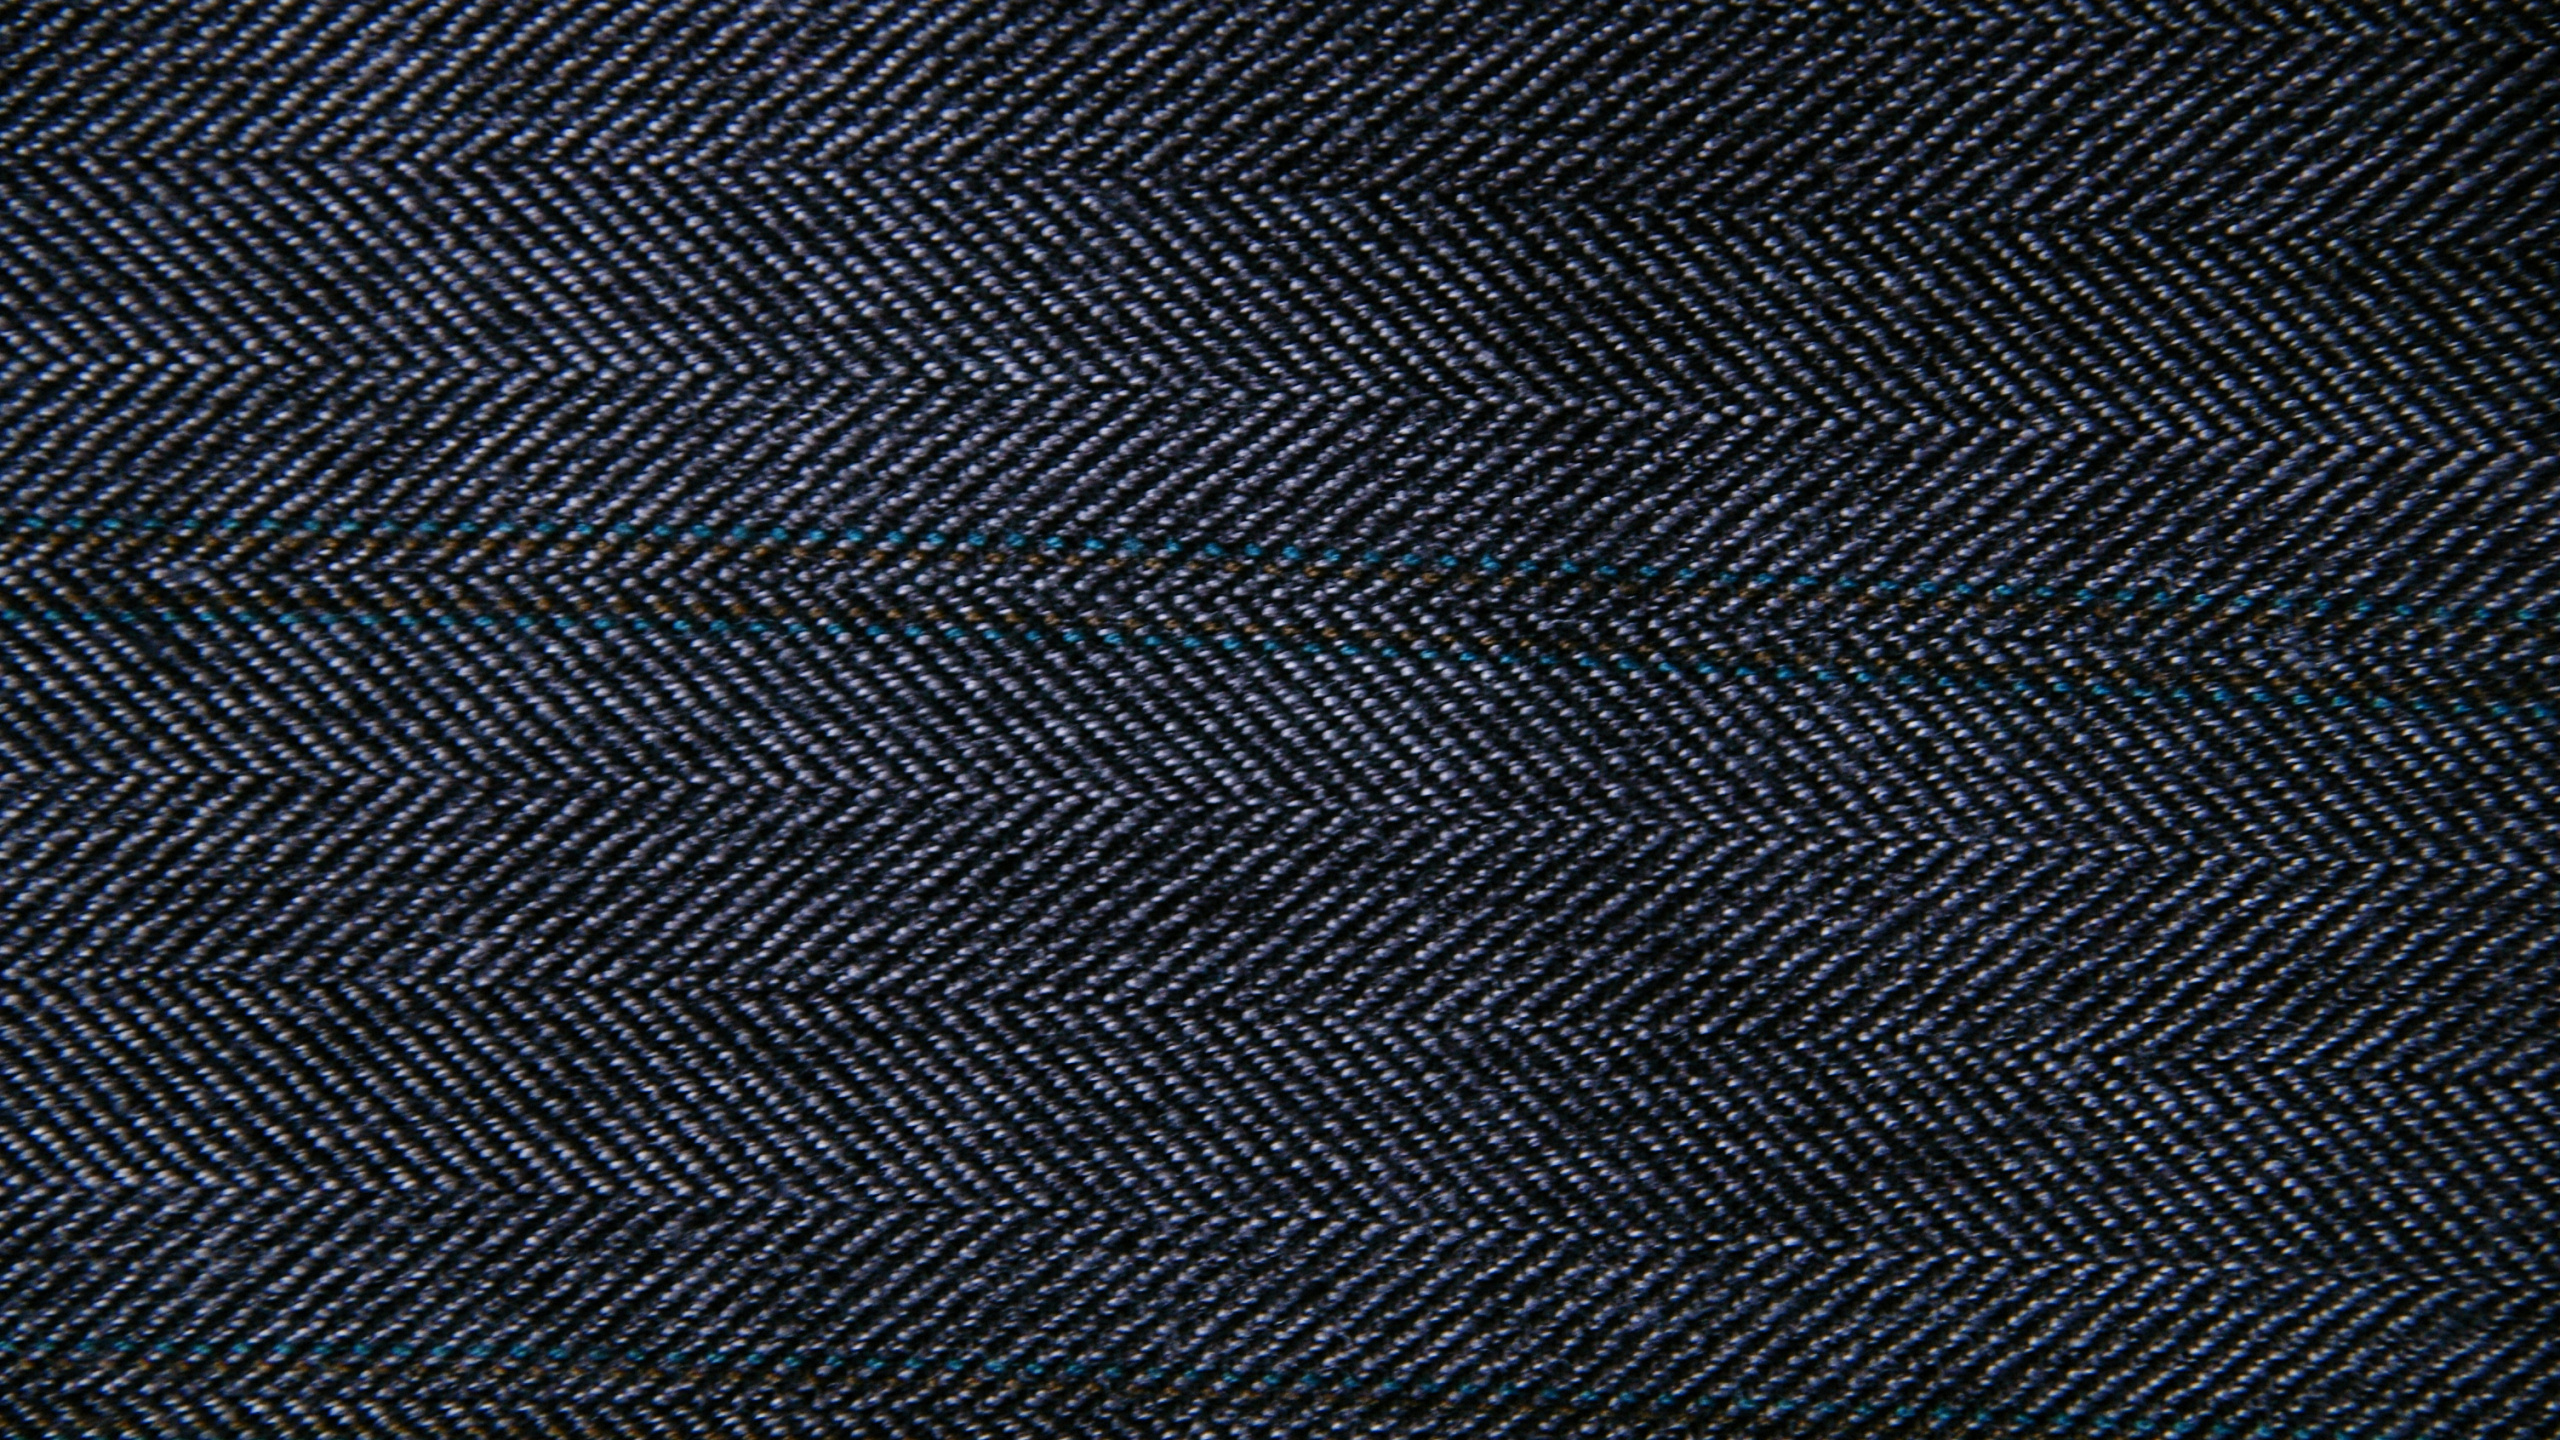 Schwarz-weiß Gestreiftes Textil. Wallpaper in 2560x1440 Resolution